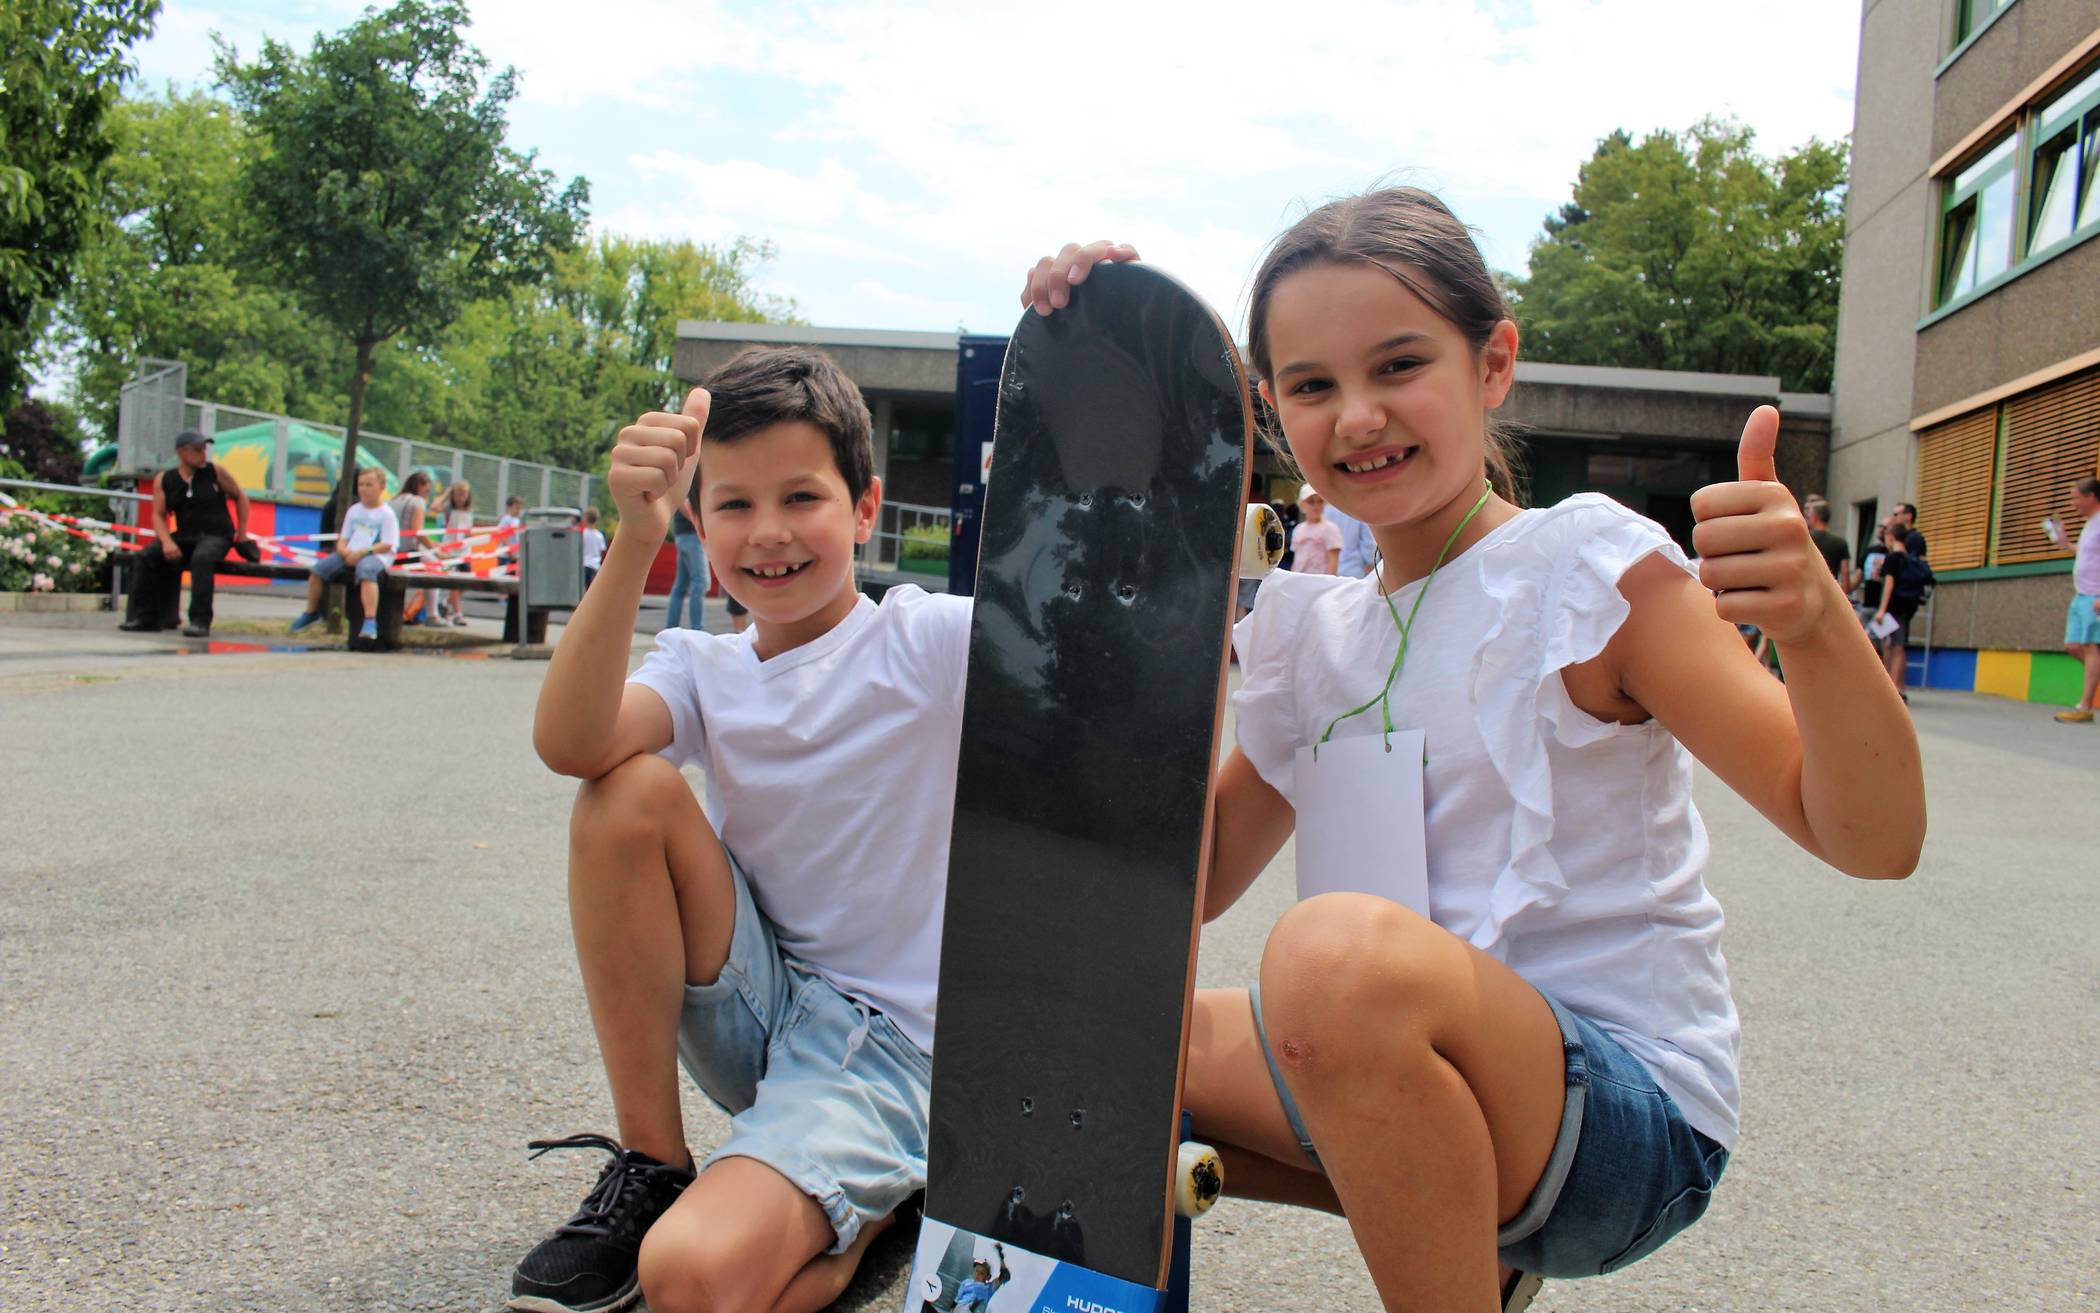  Die Schüler Toma (8) und Nina (7) haben sichtlich Spaß auf dem Jubiläumsfest der Grundschule Herrenhauserstraße und bei der Losbude sogar ein neues Skateboard gewonnen. 